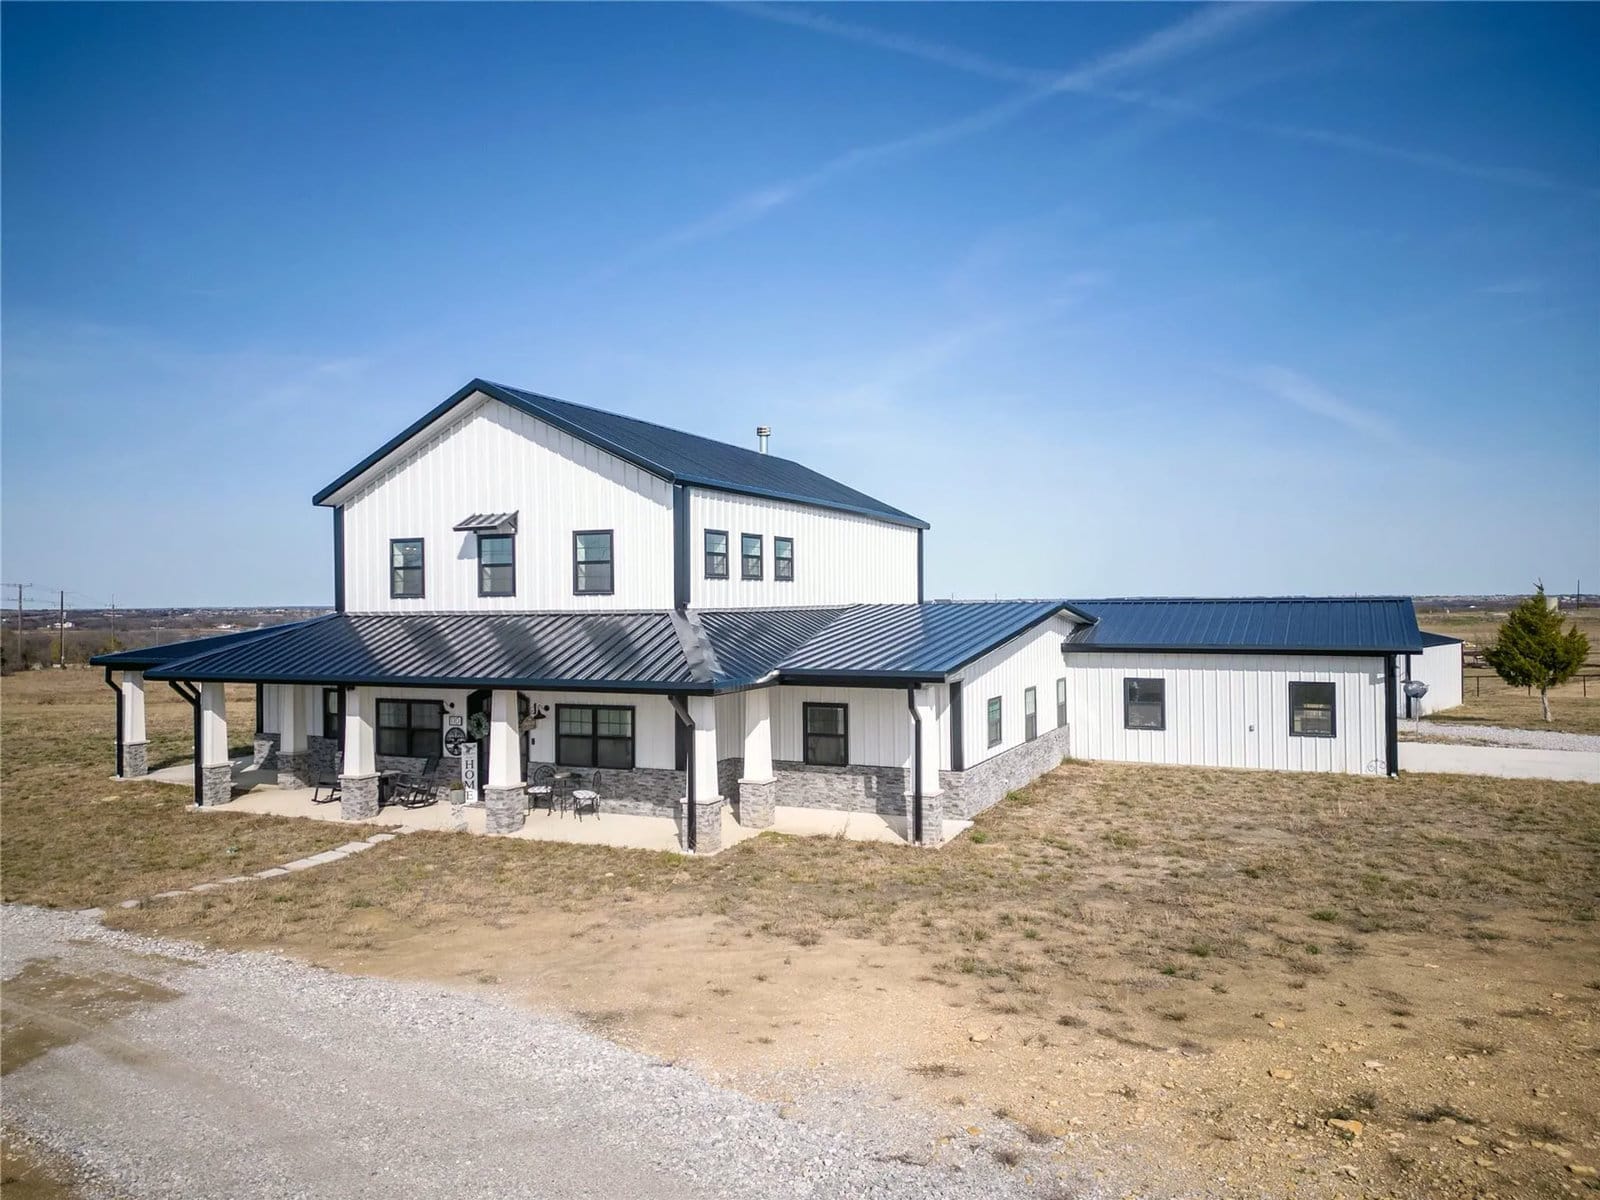 Decatur, TX Modern Farmhouse Metal Home